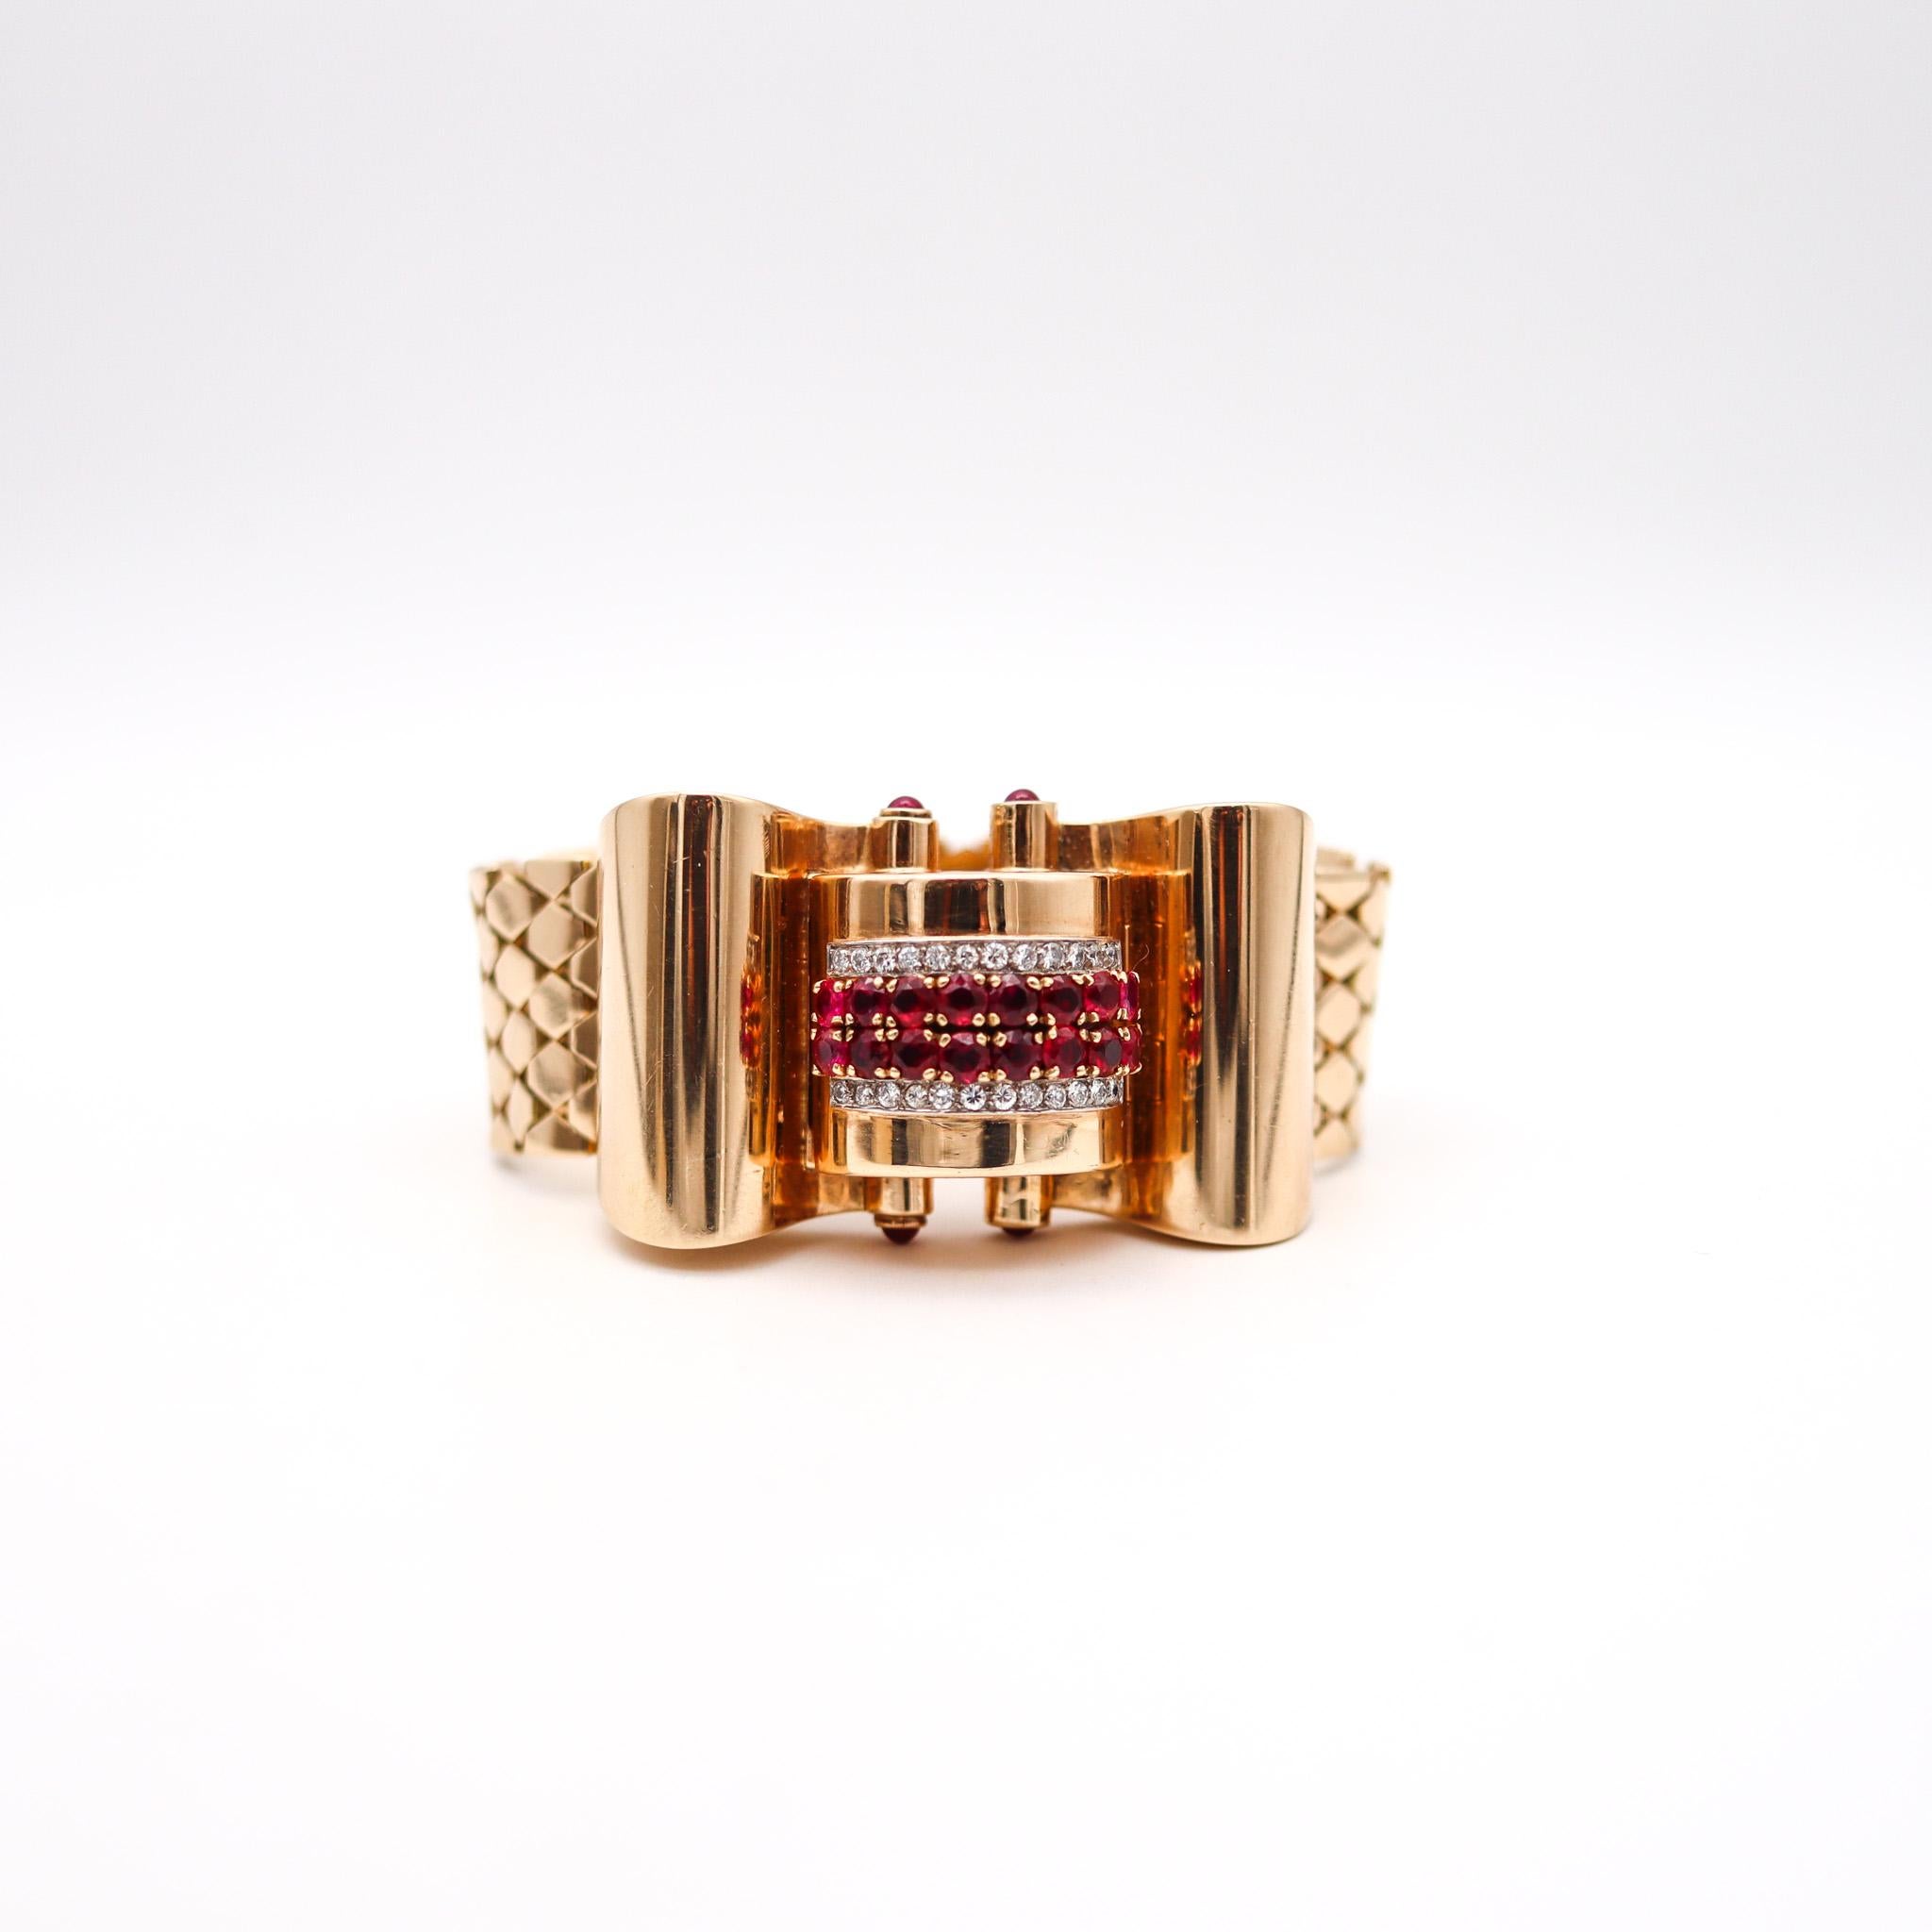 Retro Machin Alter geometrische Armbanduhr.

Fabelhafte Damenarmbanduhr, die in den späten 1930er Jahren in Amerika in der Übergangszeit zwischen Art déco und Retro entstand. Es wurde mit kühnen geometrischen Mustern aus dem Maschinenzeitalter als